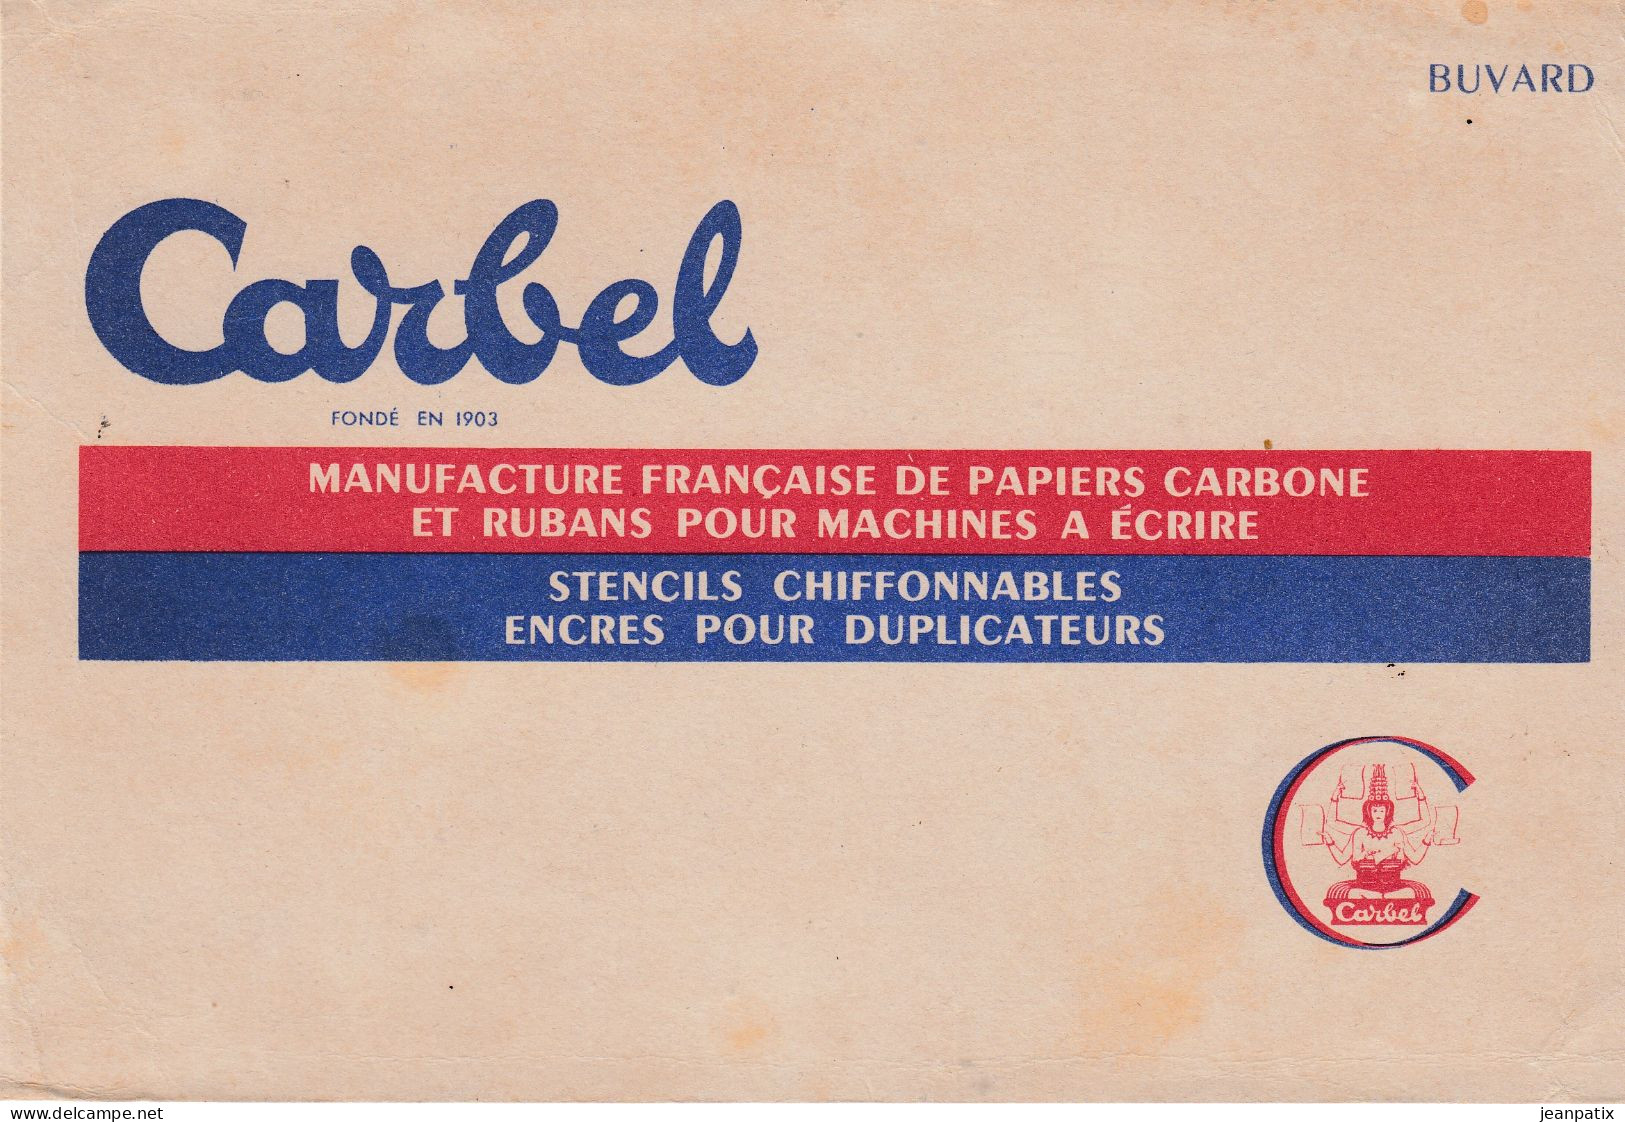 BUVARD & BLOTTER - CARBEL - Manufacture De Papier Carbone Our Machine à écrire - Chocolade En Cacao